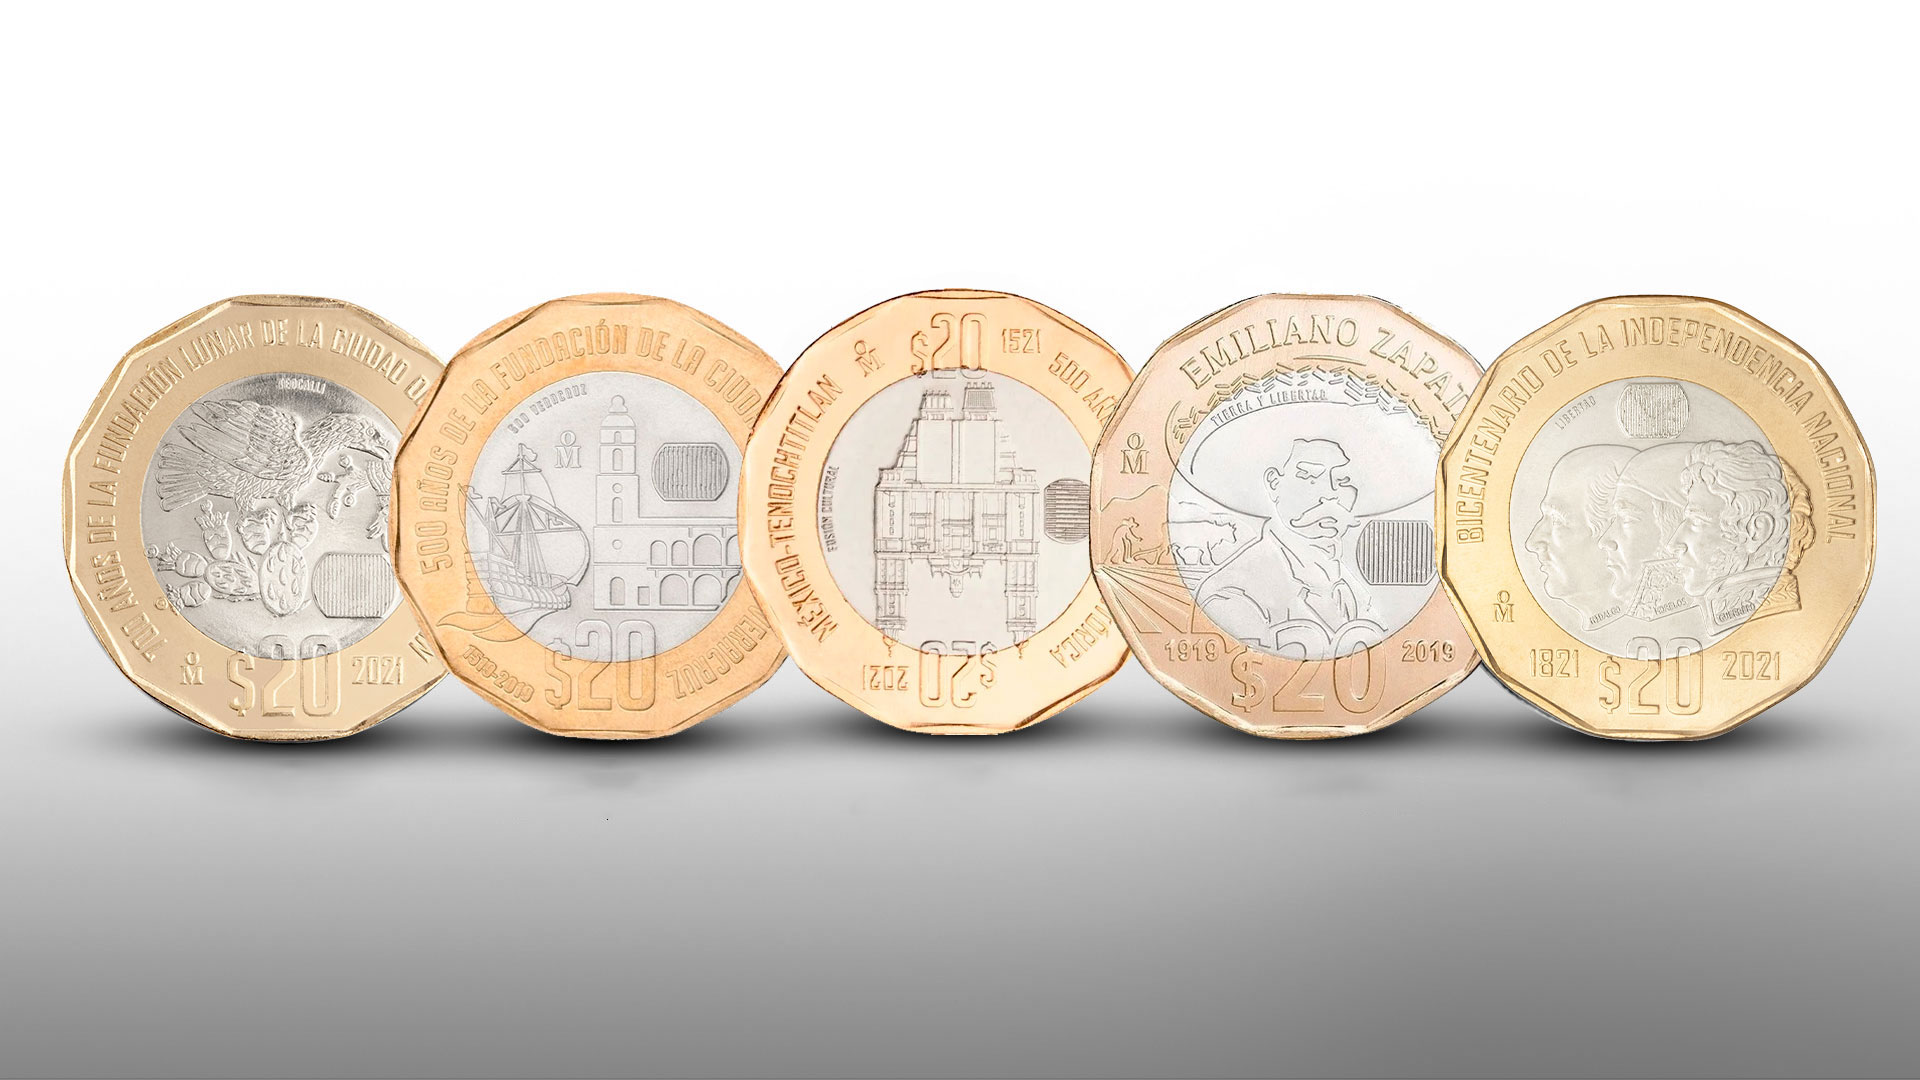 Quinteto de monedas conmemorativas a costos estratosféricos: cuál es la del precio más elevado